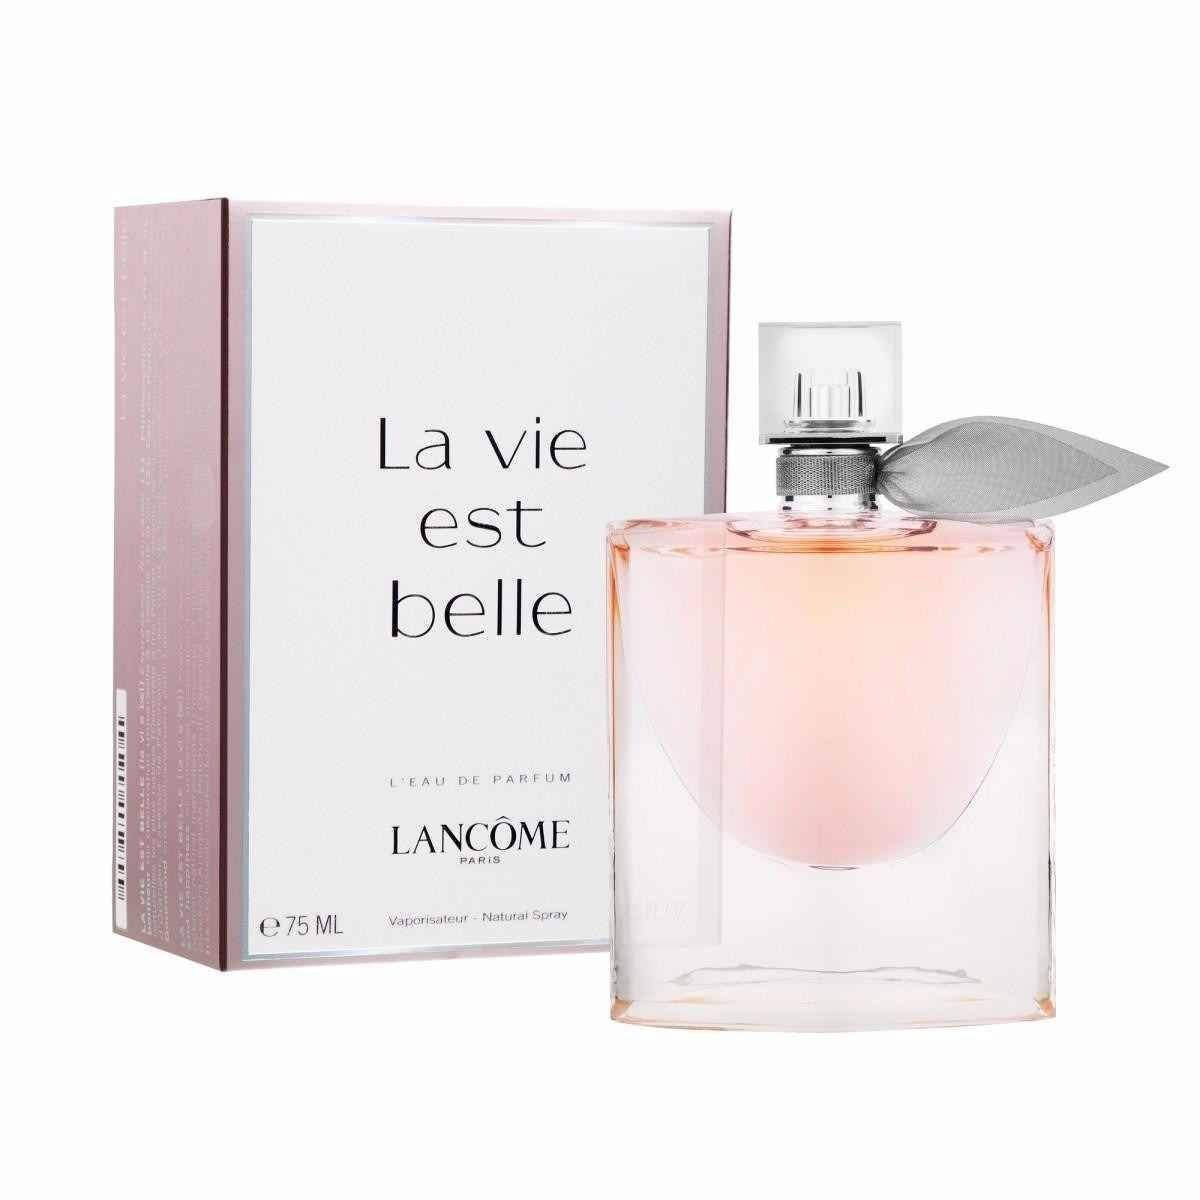 Lựa chọn đầu tiên đến từ nhãn hiệu nổi tiếng tại Pháp Lancome: La vie est belle